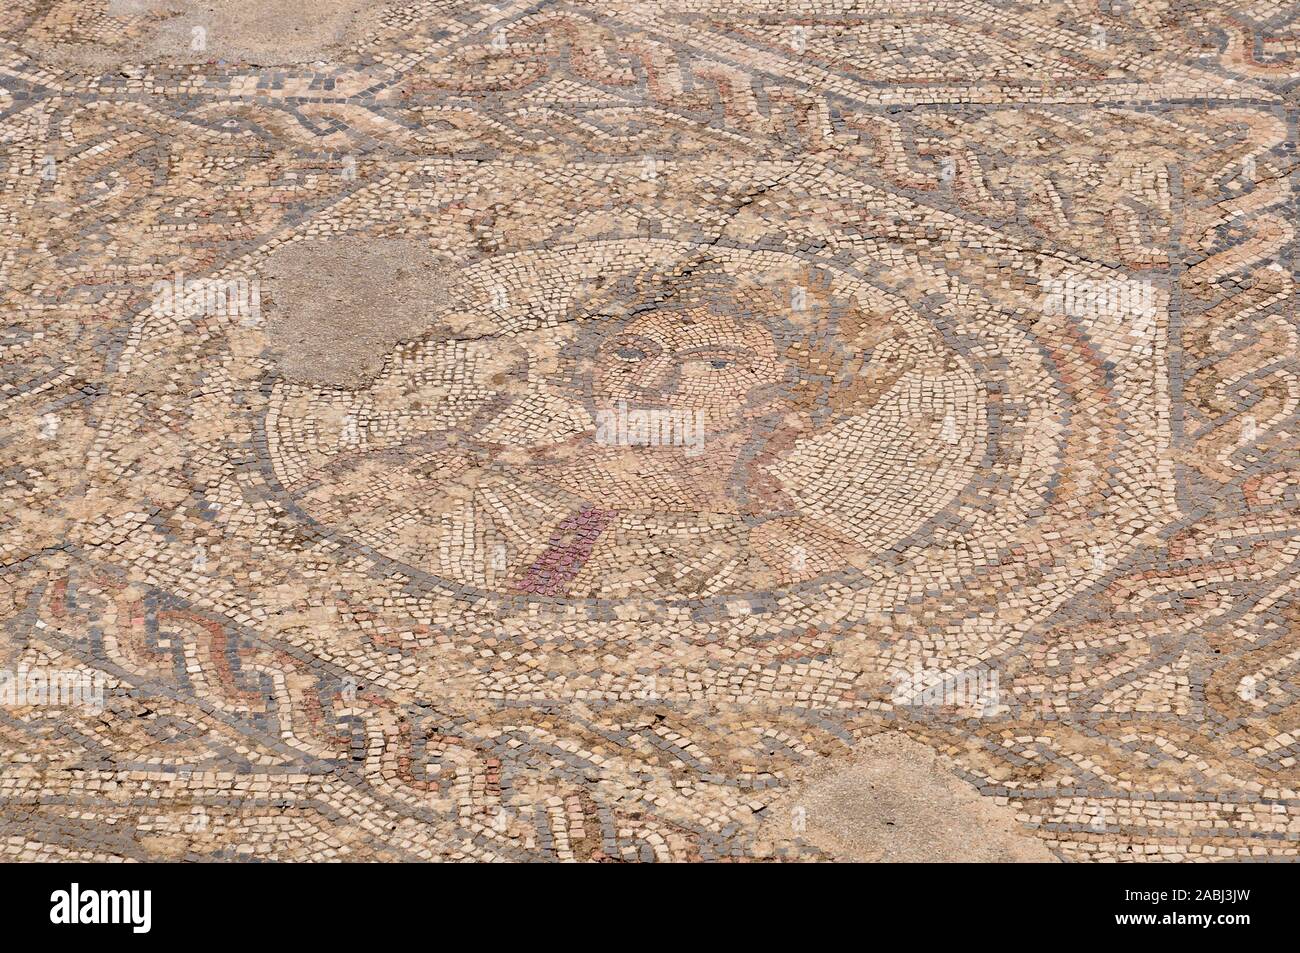 Antico mosaico romano con una laureated volto umano nel III secolo A.C. la città romana rovine di Volubilis sito archeologico (Meknes, Fès-Meknès, Marocco) Foto Stock